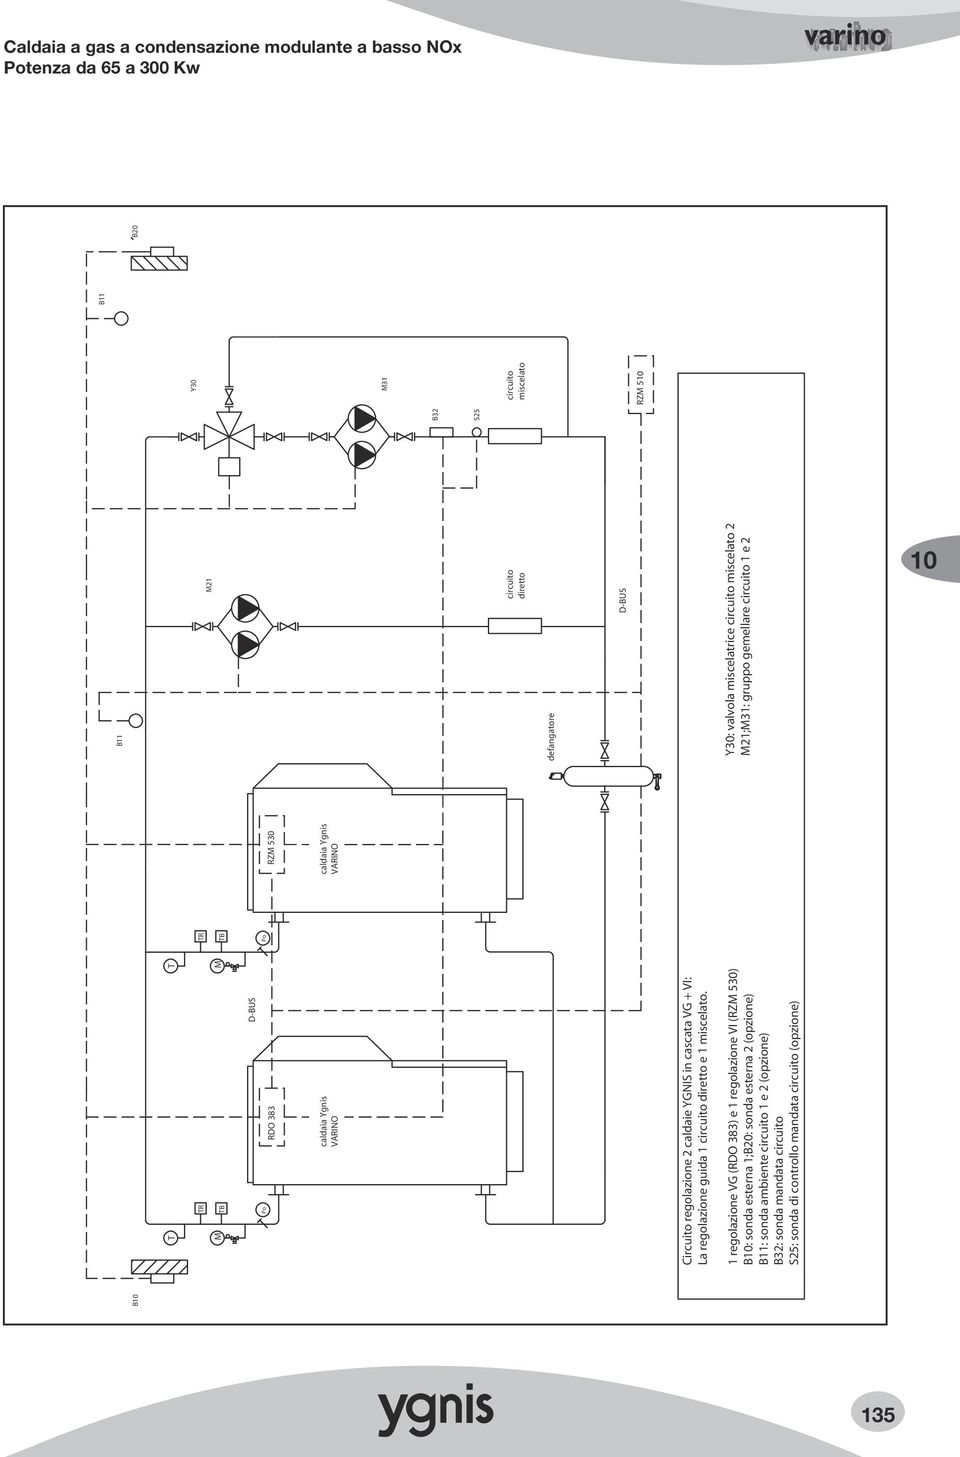 1 regolazione VG (RDO 383) e 1 regolazione VI (RZ 530) B: sonda esterna 1;B20: sonda esterna 2 (opzione) B11: sonda ambiente circuito 1 e 2